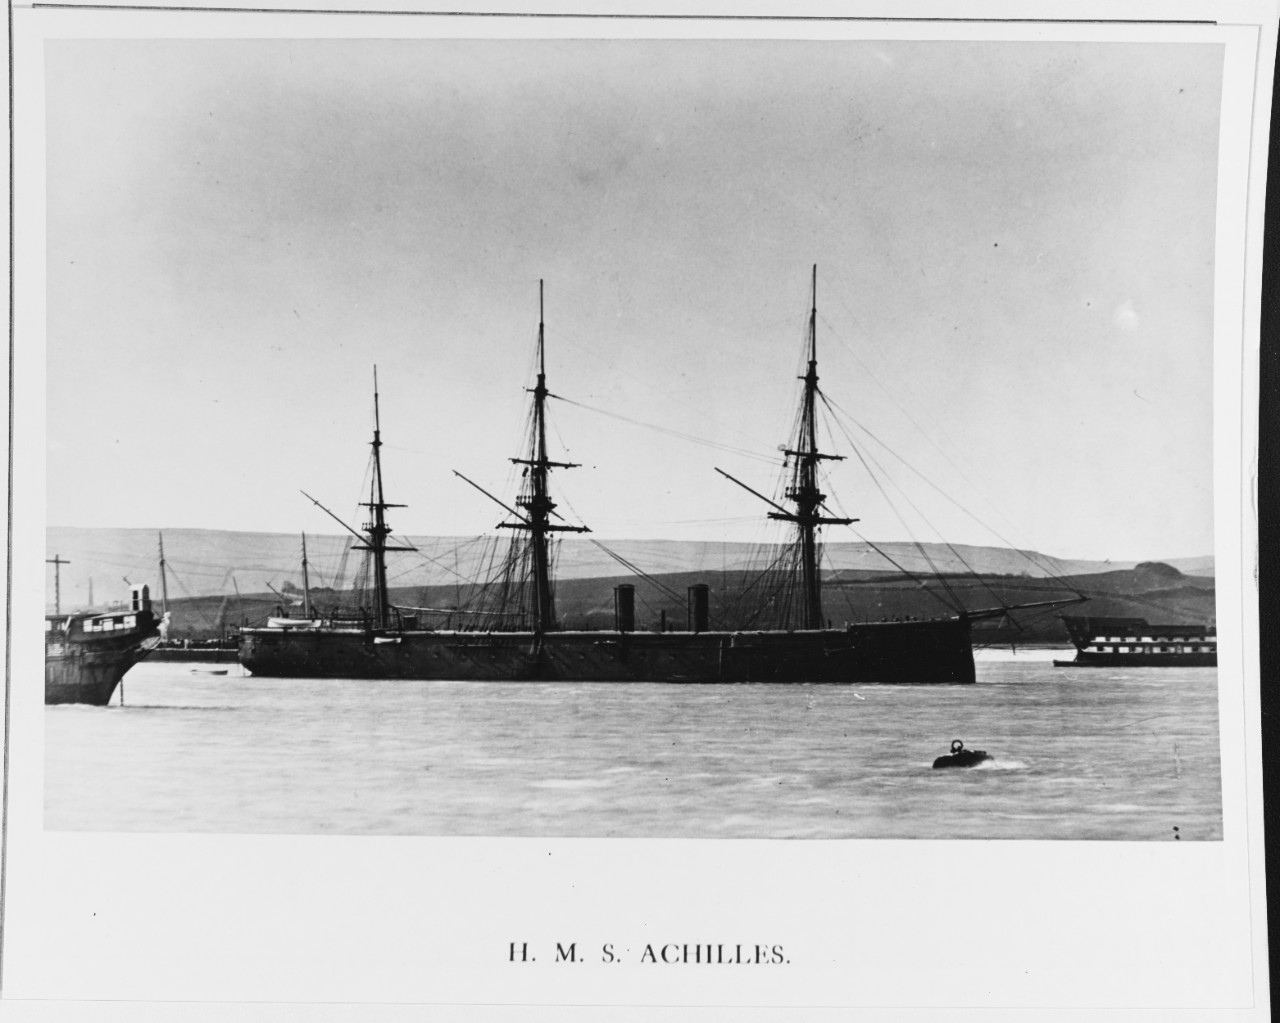 HMS ACHILLES (BRITISH BATTLESHIP, 1863)